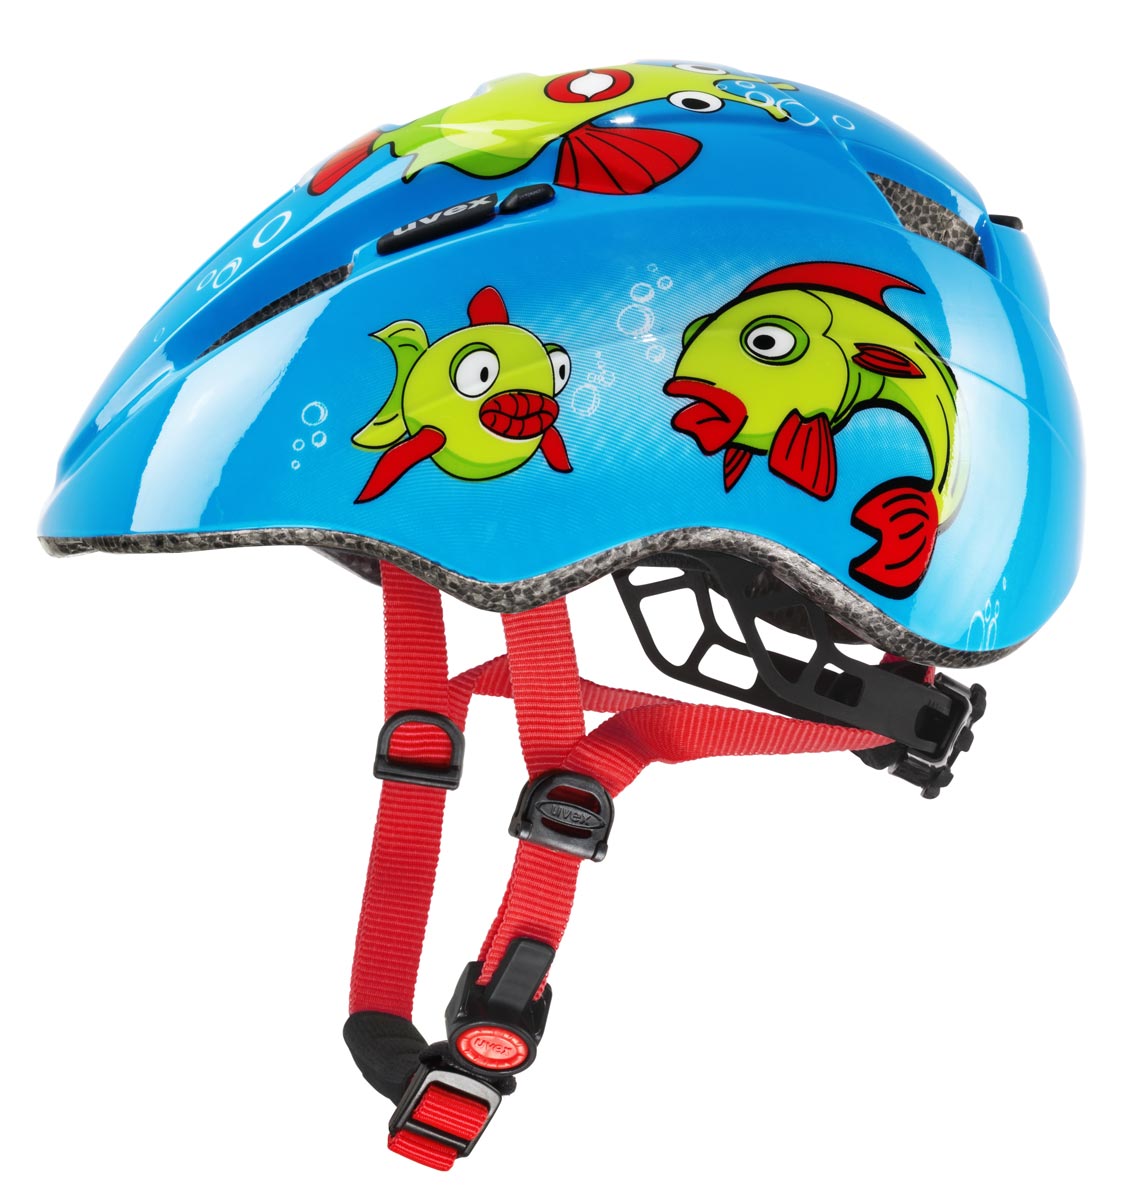 KID II FISH - Children's cycling helmet